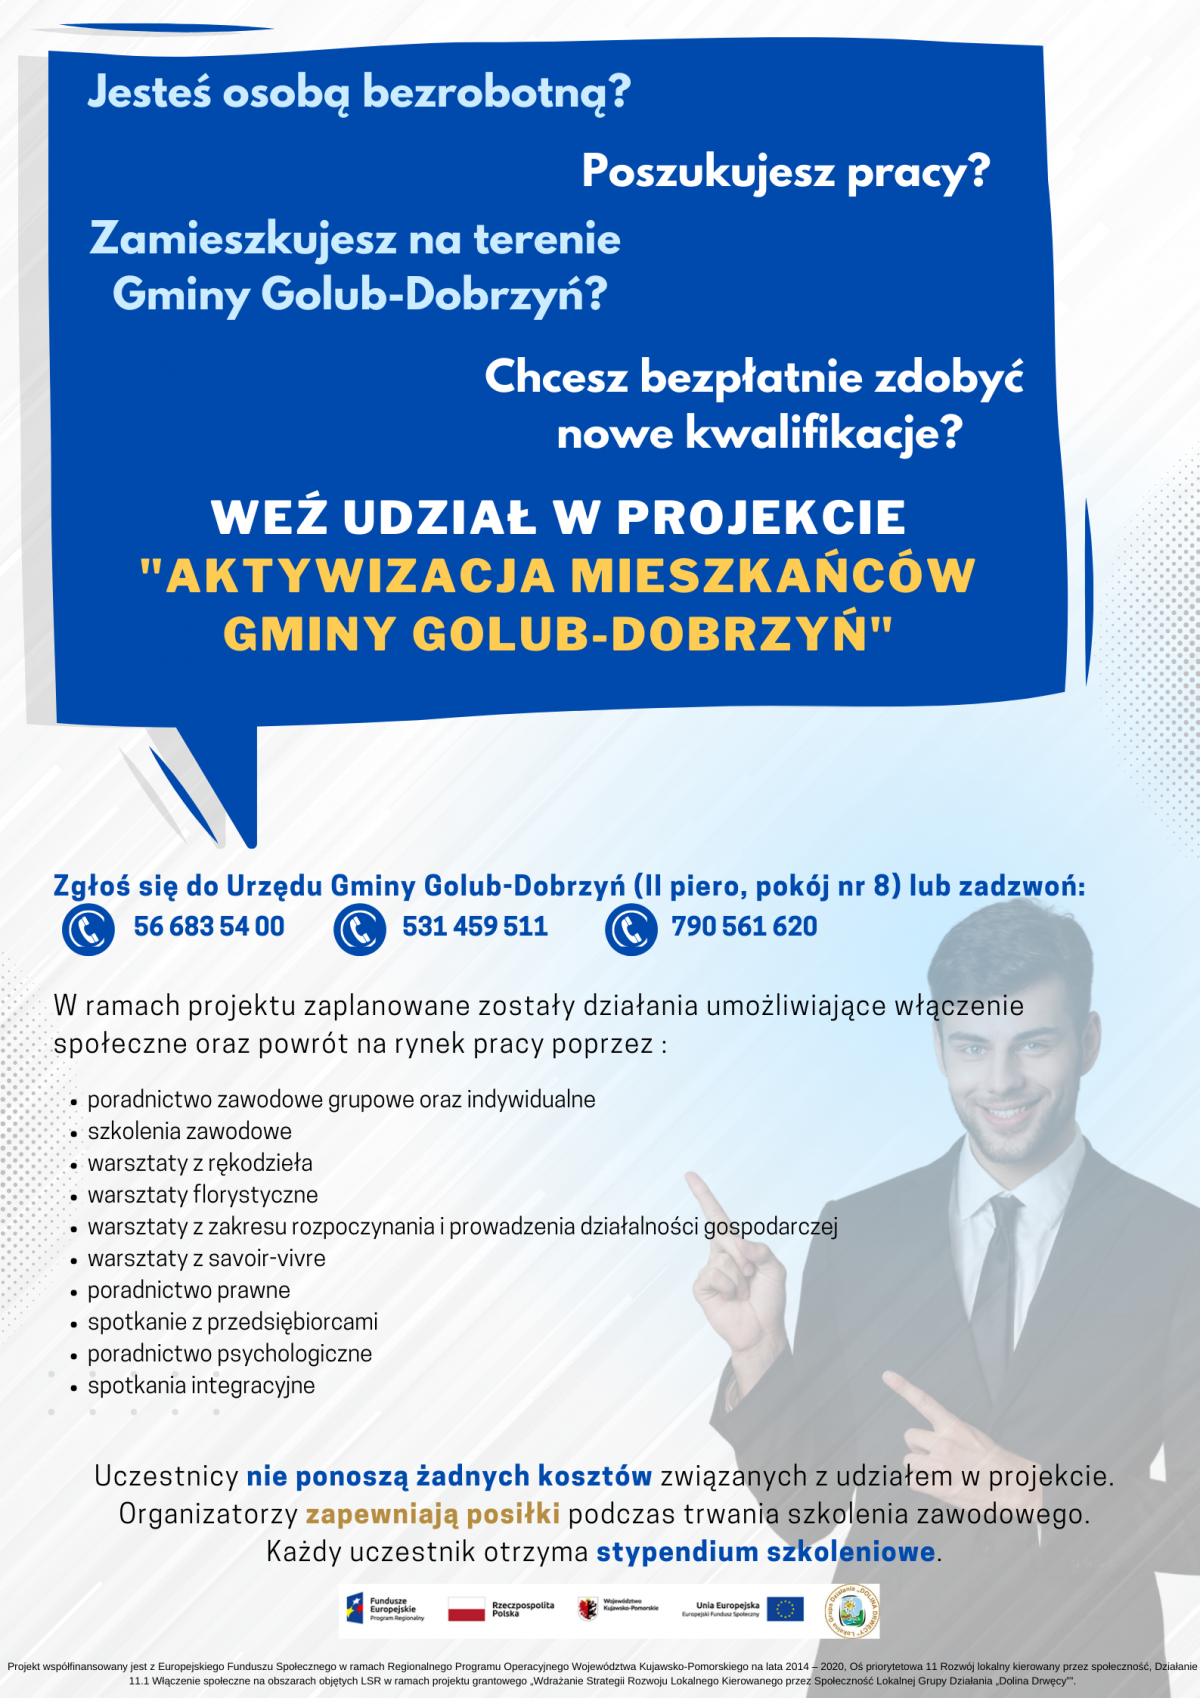 Aktywizacja społeczno-zawodowa mieszkańców gminy Golub-Dobrzyń